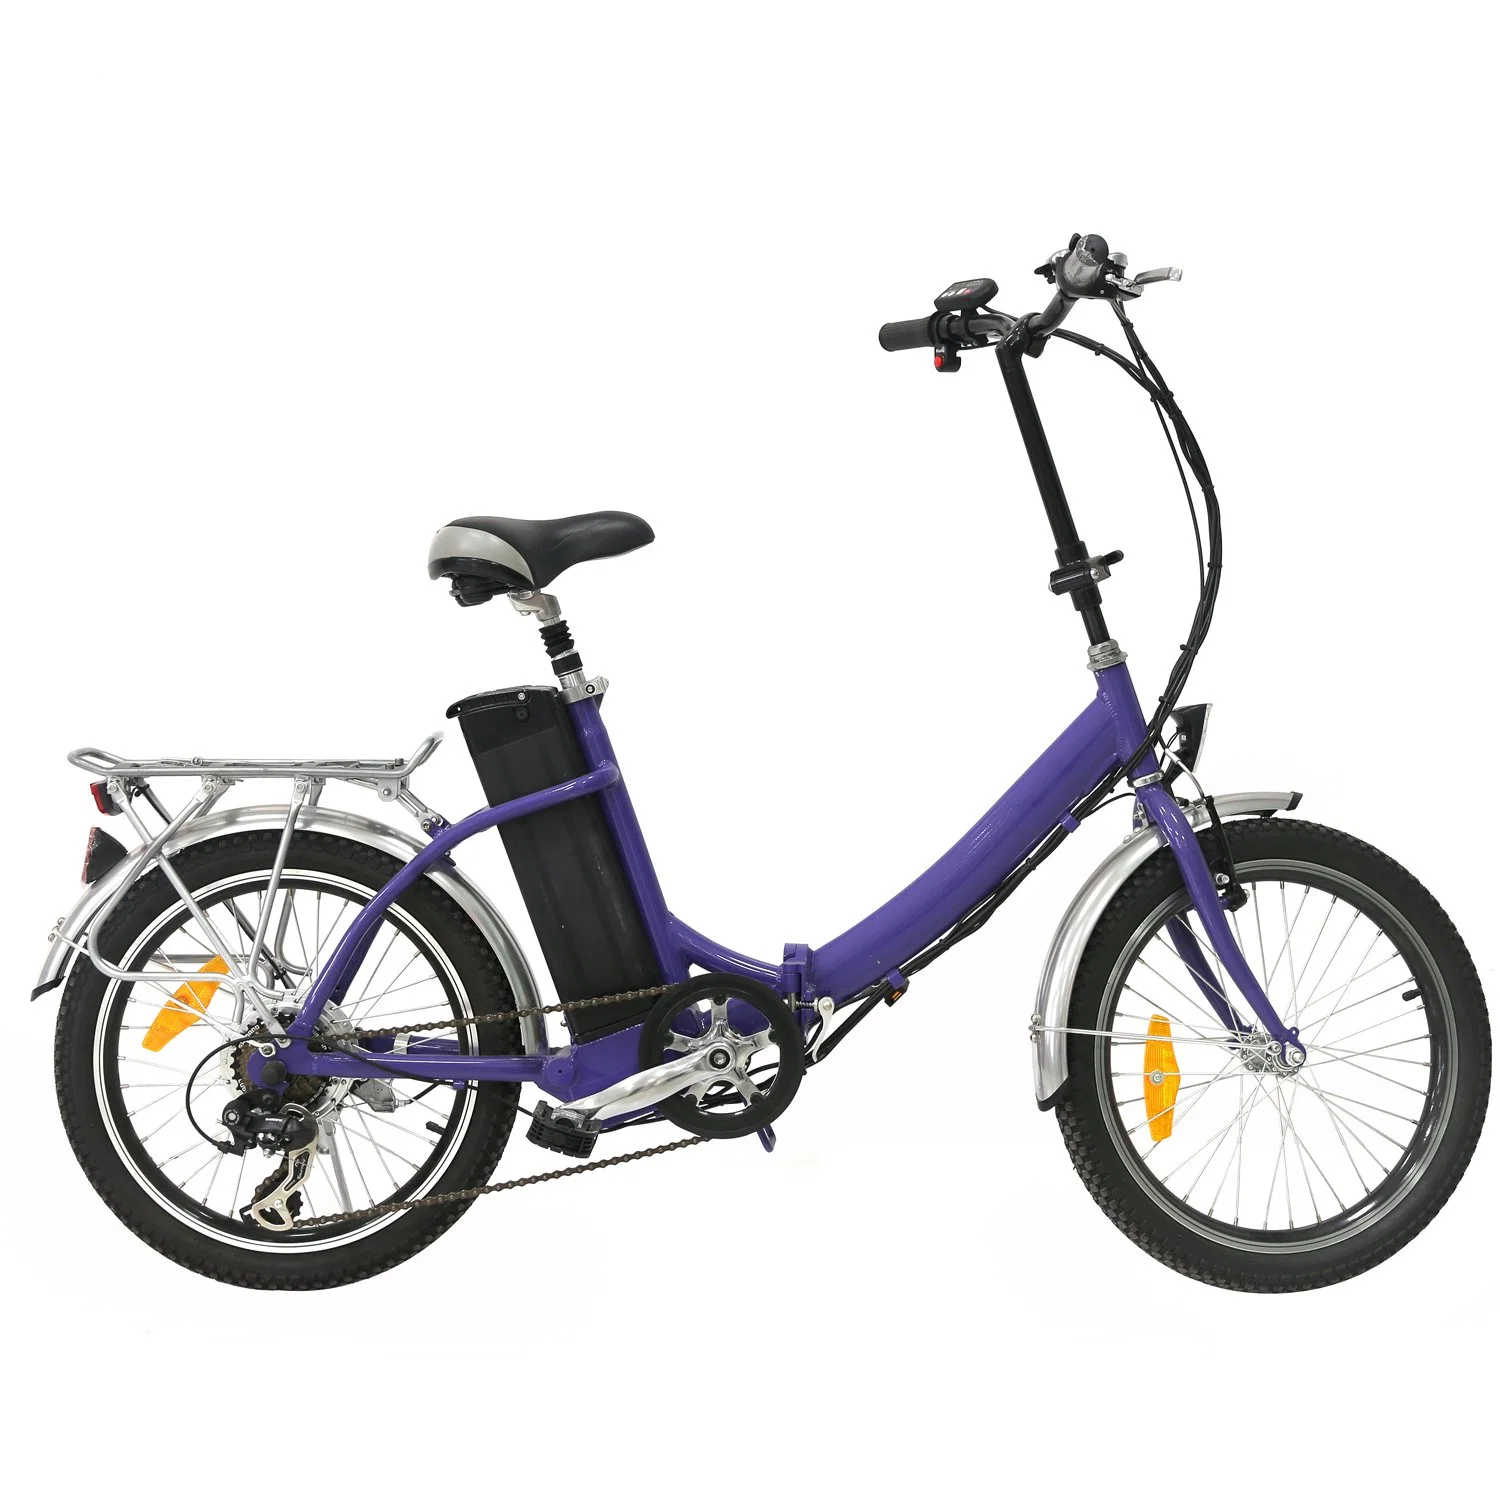 20'' Kenda Brand Folding Little Electric City Bike for Adult En15194